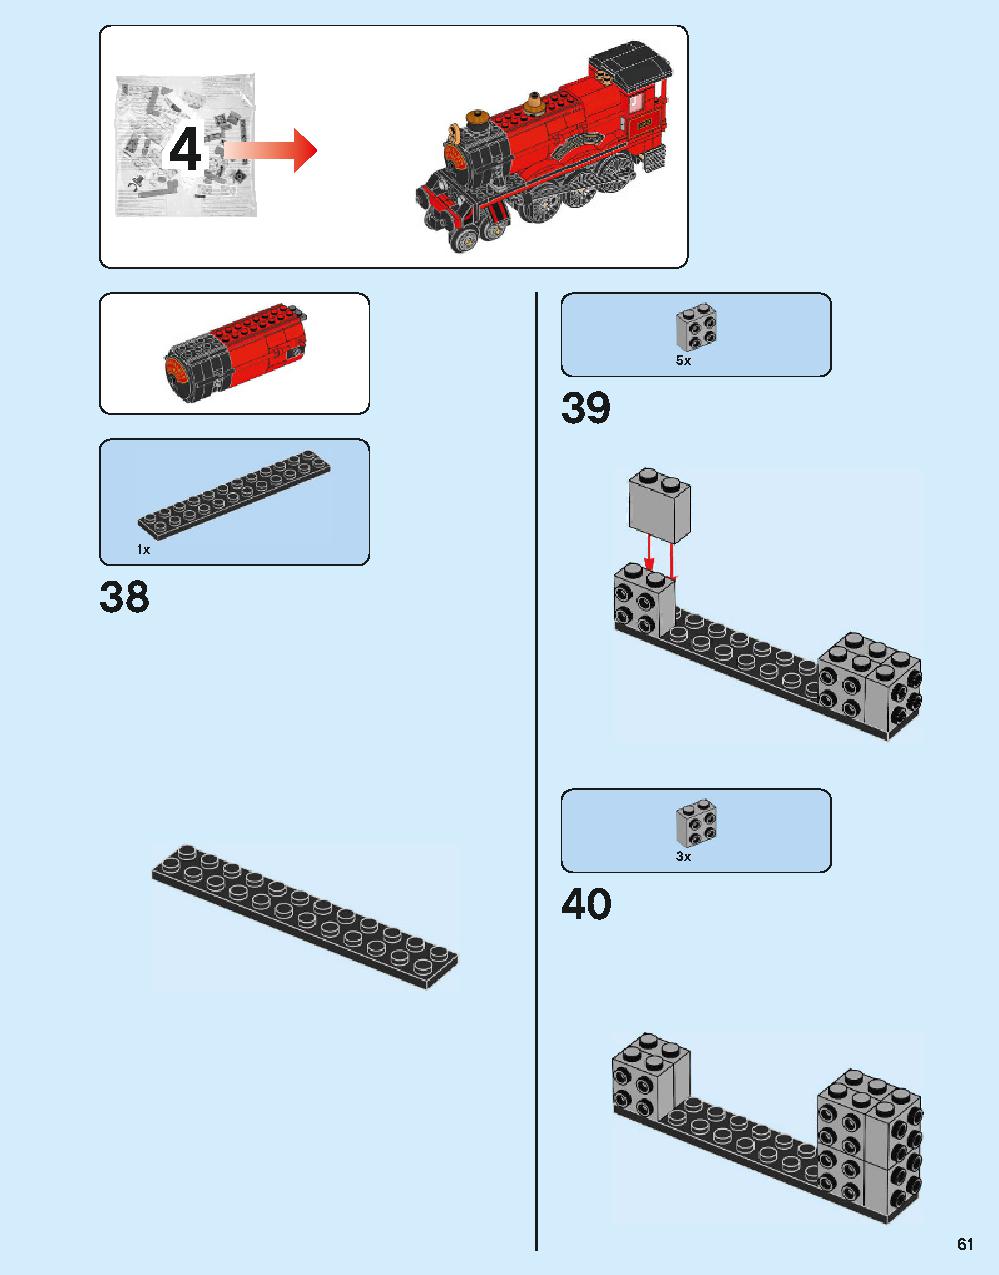 ホグワーツ特急 75955 レゴの商品情報 レゴの説明書・組立方法 61 page